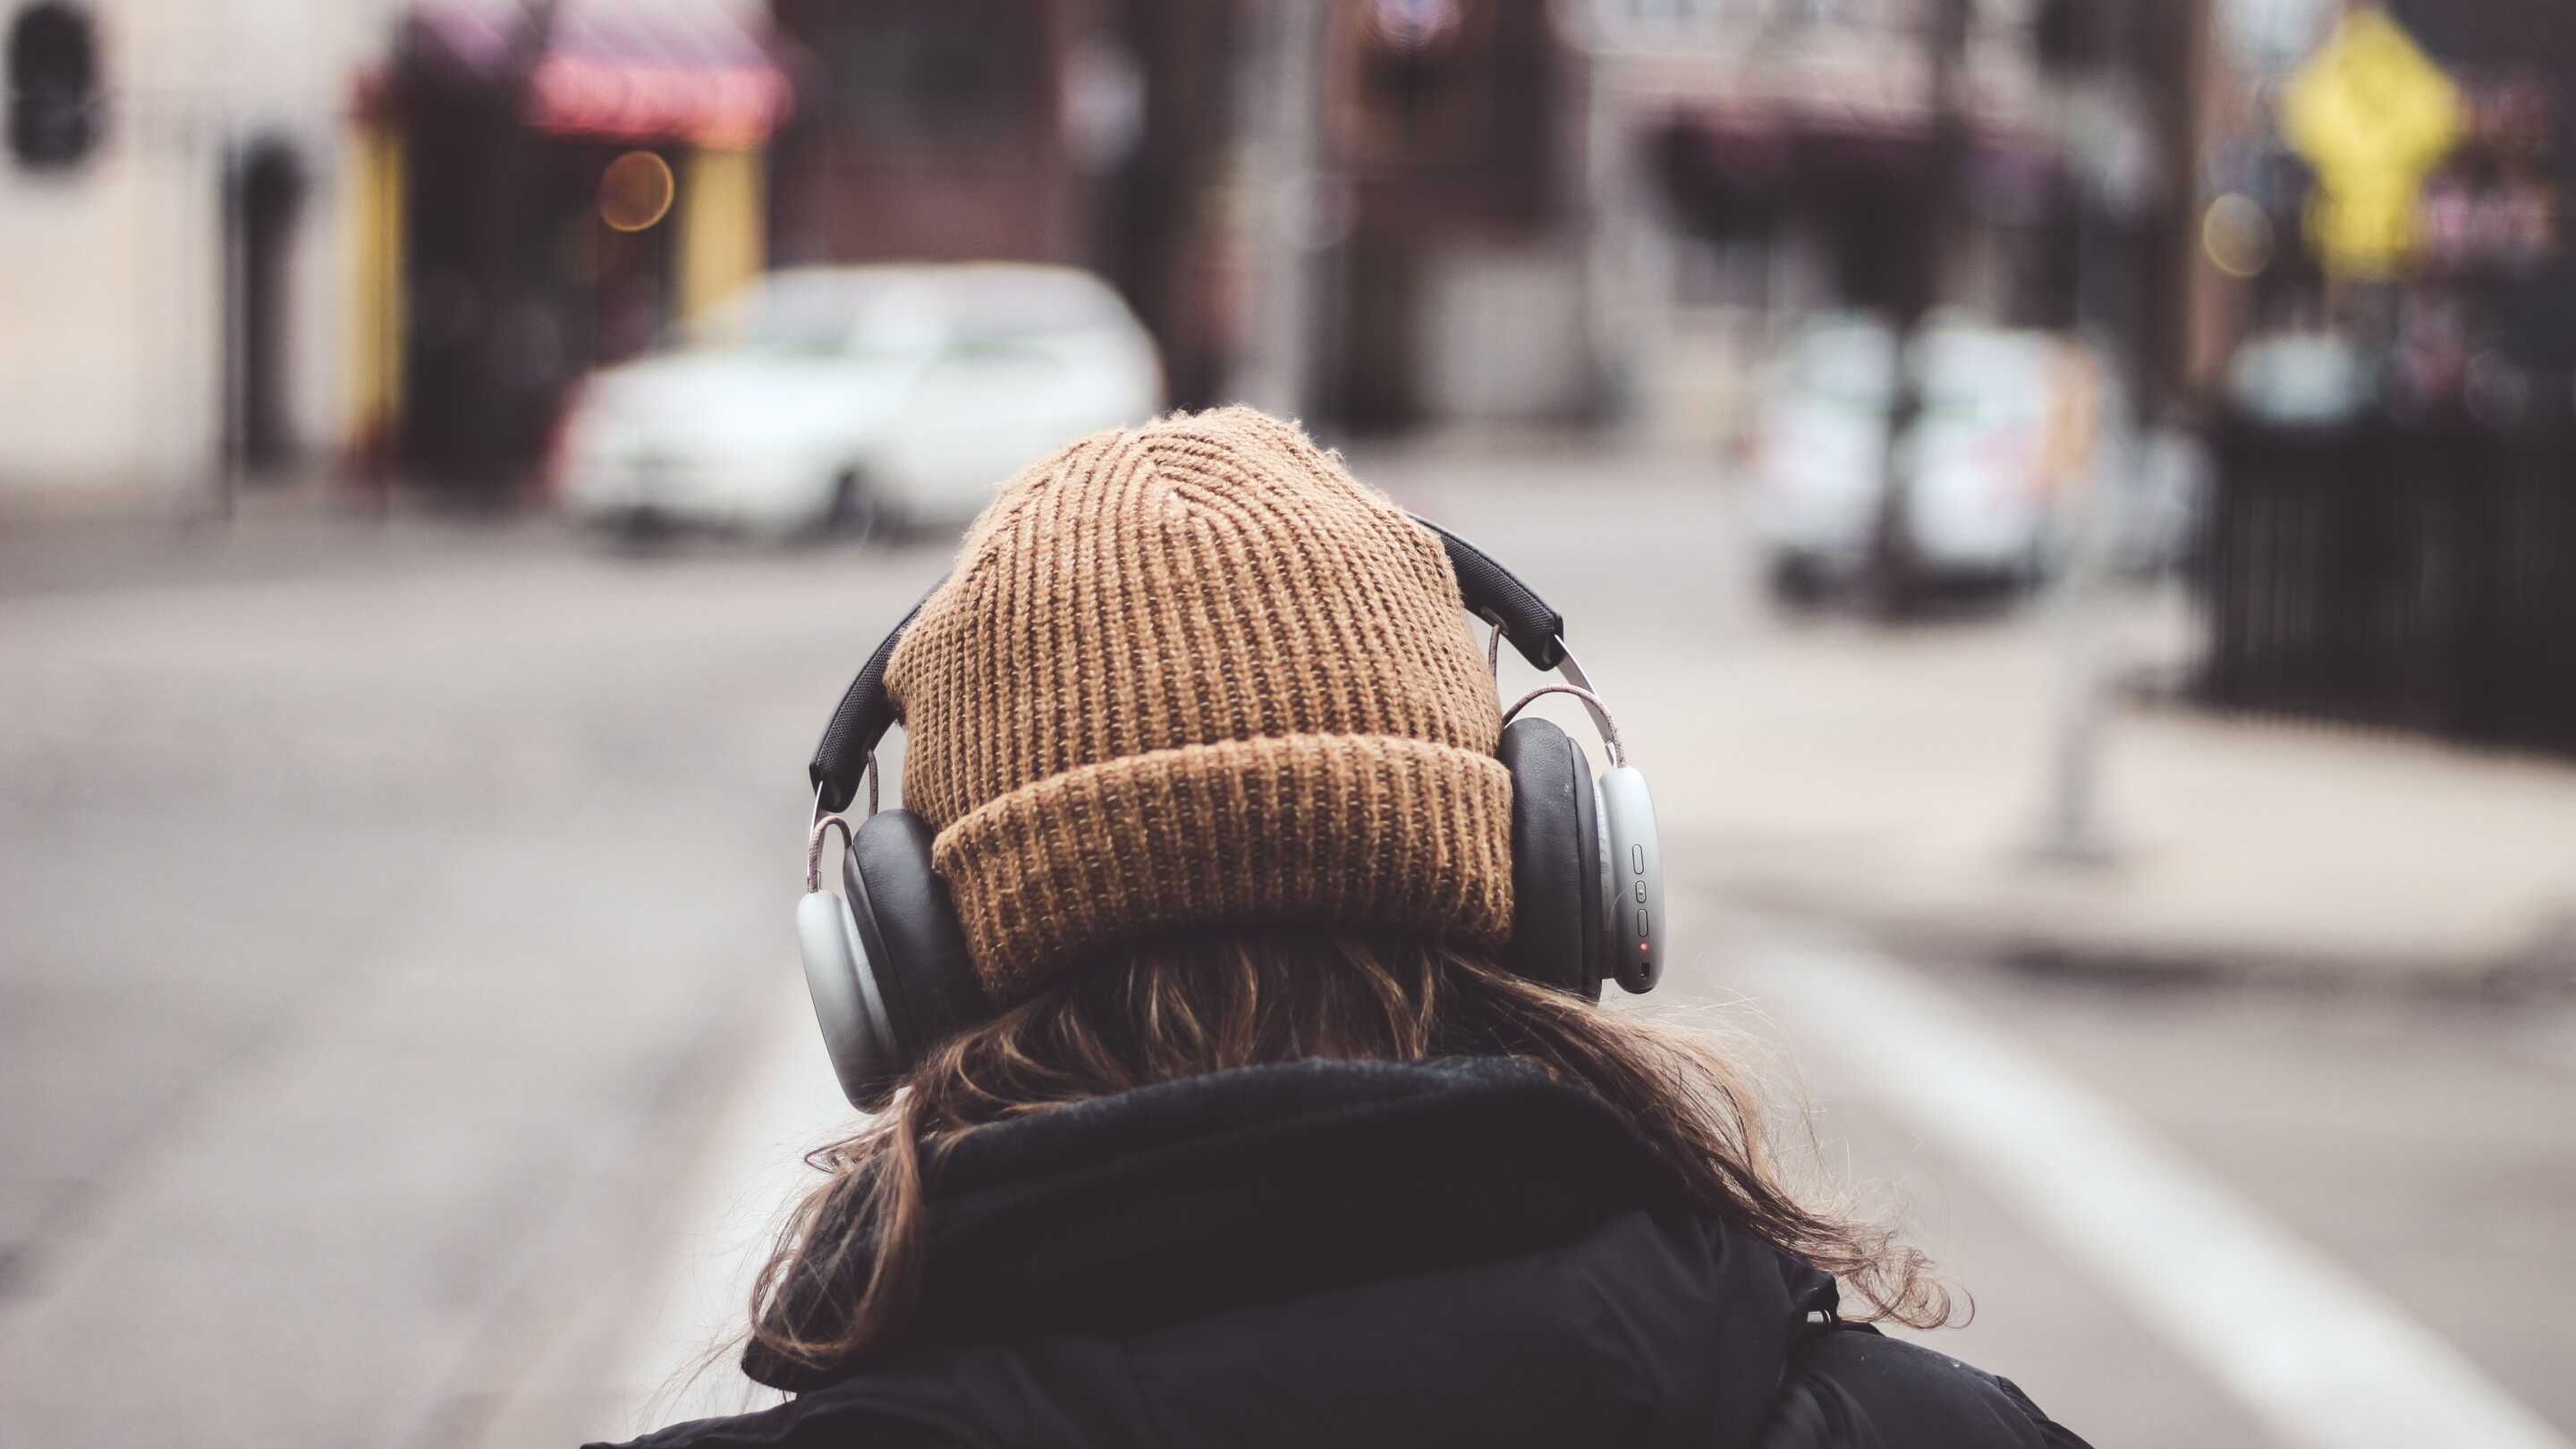 Лечение музыкой помогло в борьбе с тревогой